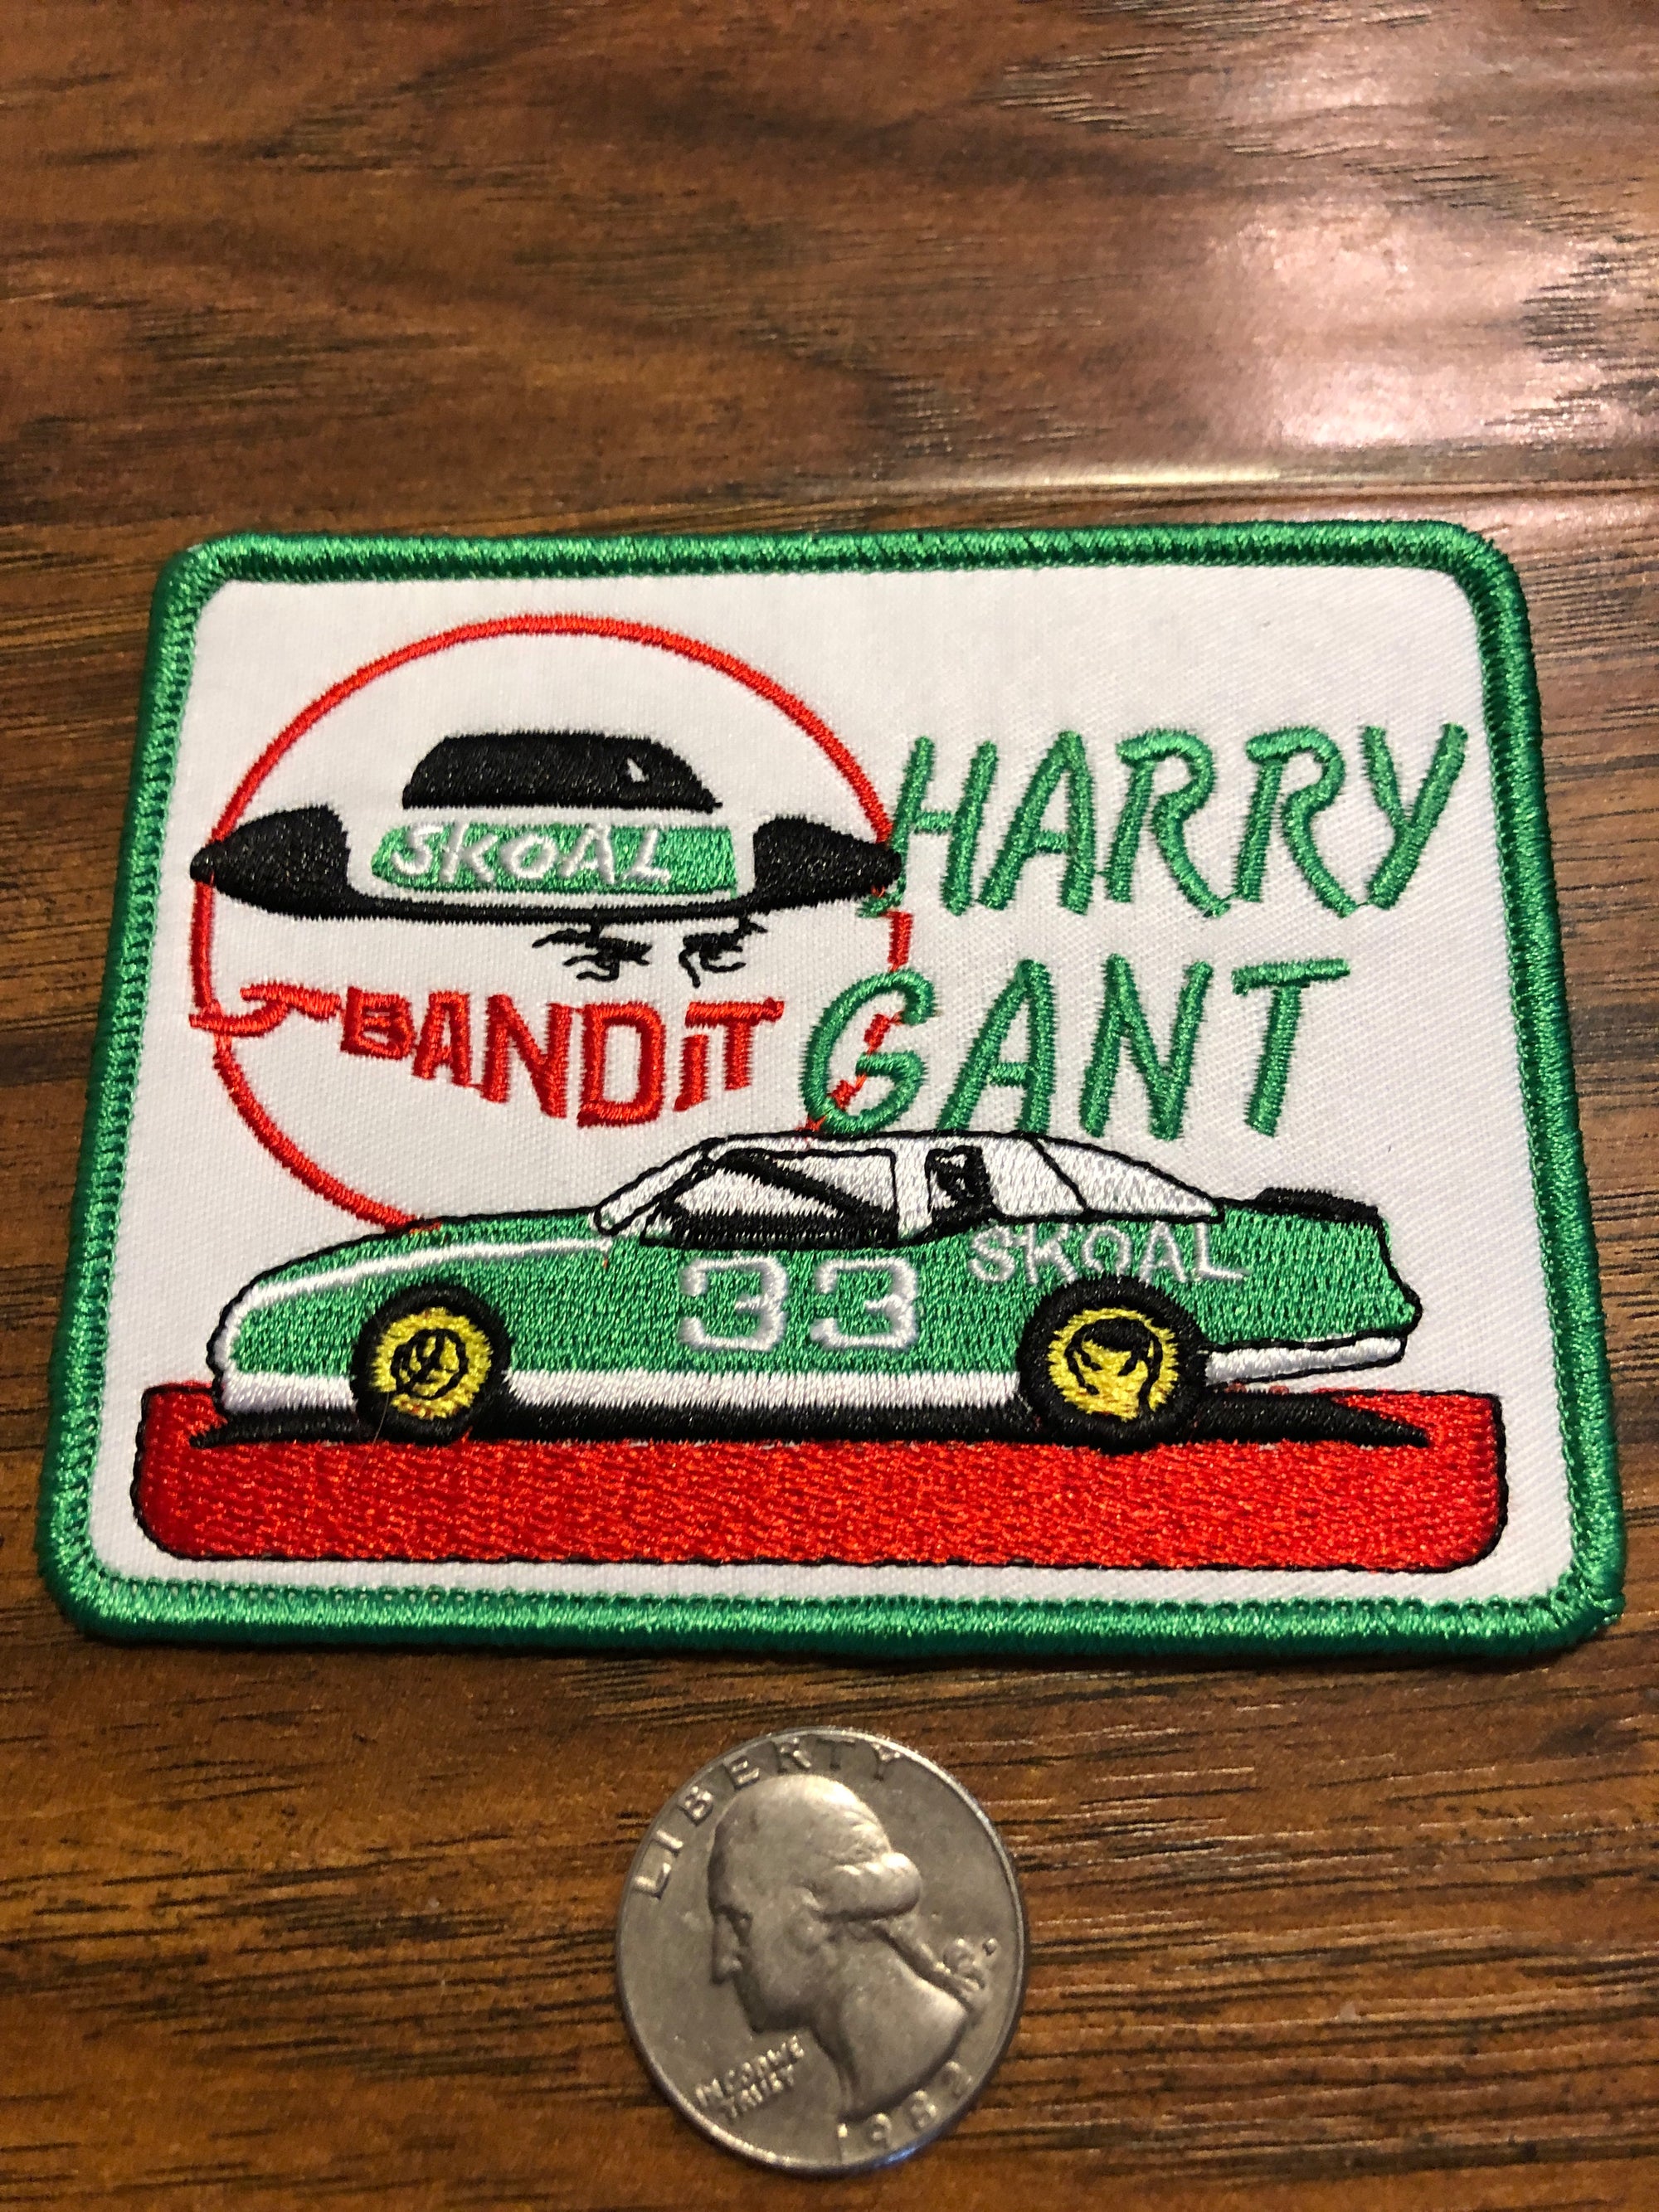 Skoal Bandit Harry Gant #33